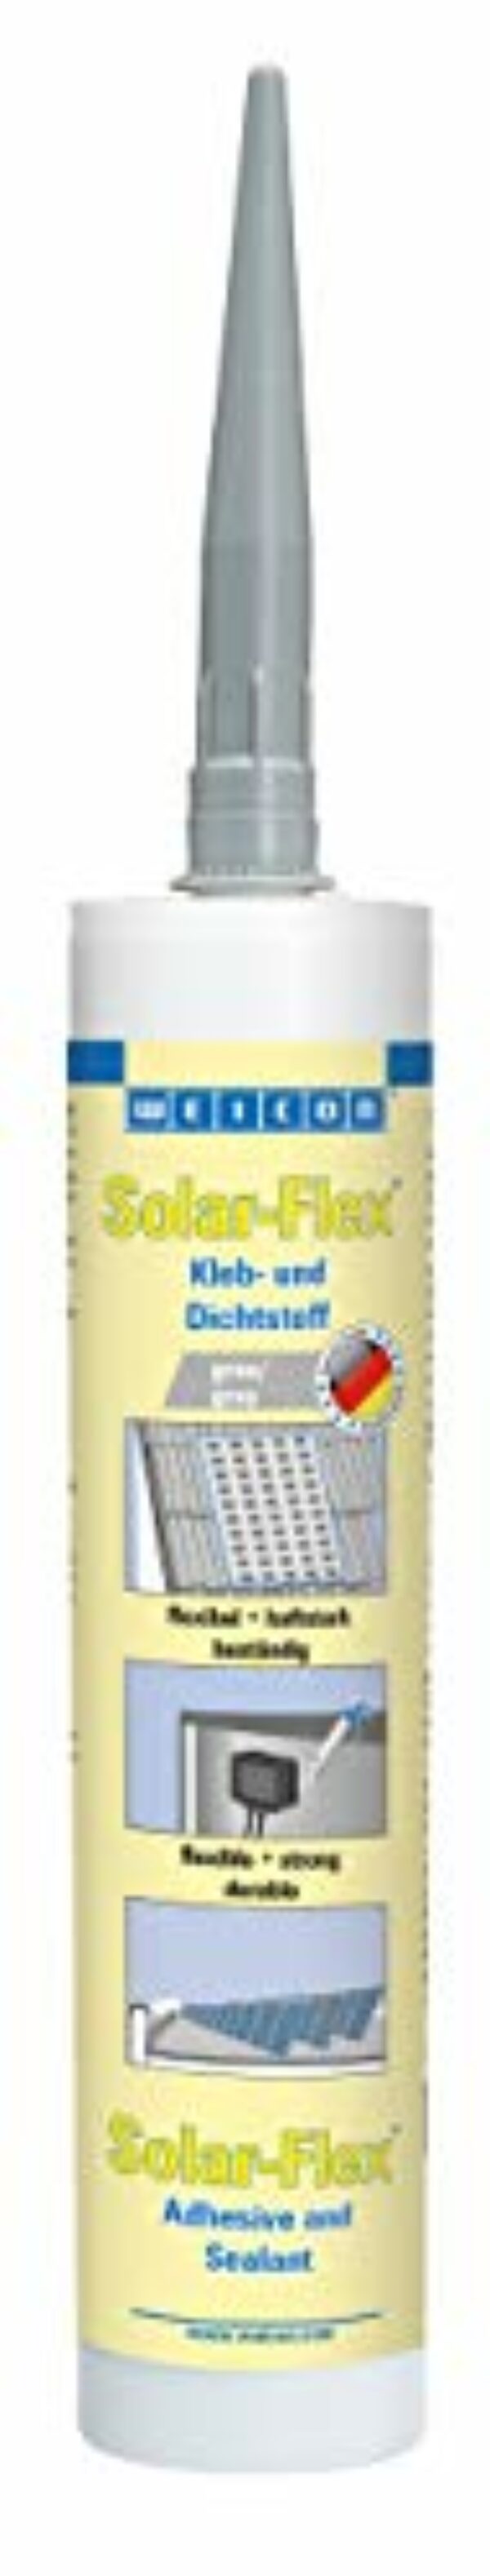 WEICON Solar-Flex 290 ml, witterungsbeständiger Solarkleber für Solar- und Photovoltaikanlagen, MS-Polymer-Basis, grau